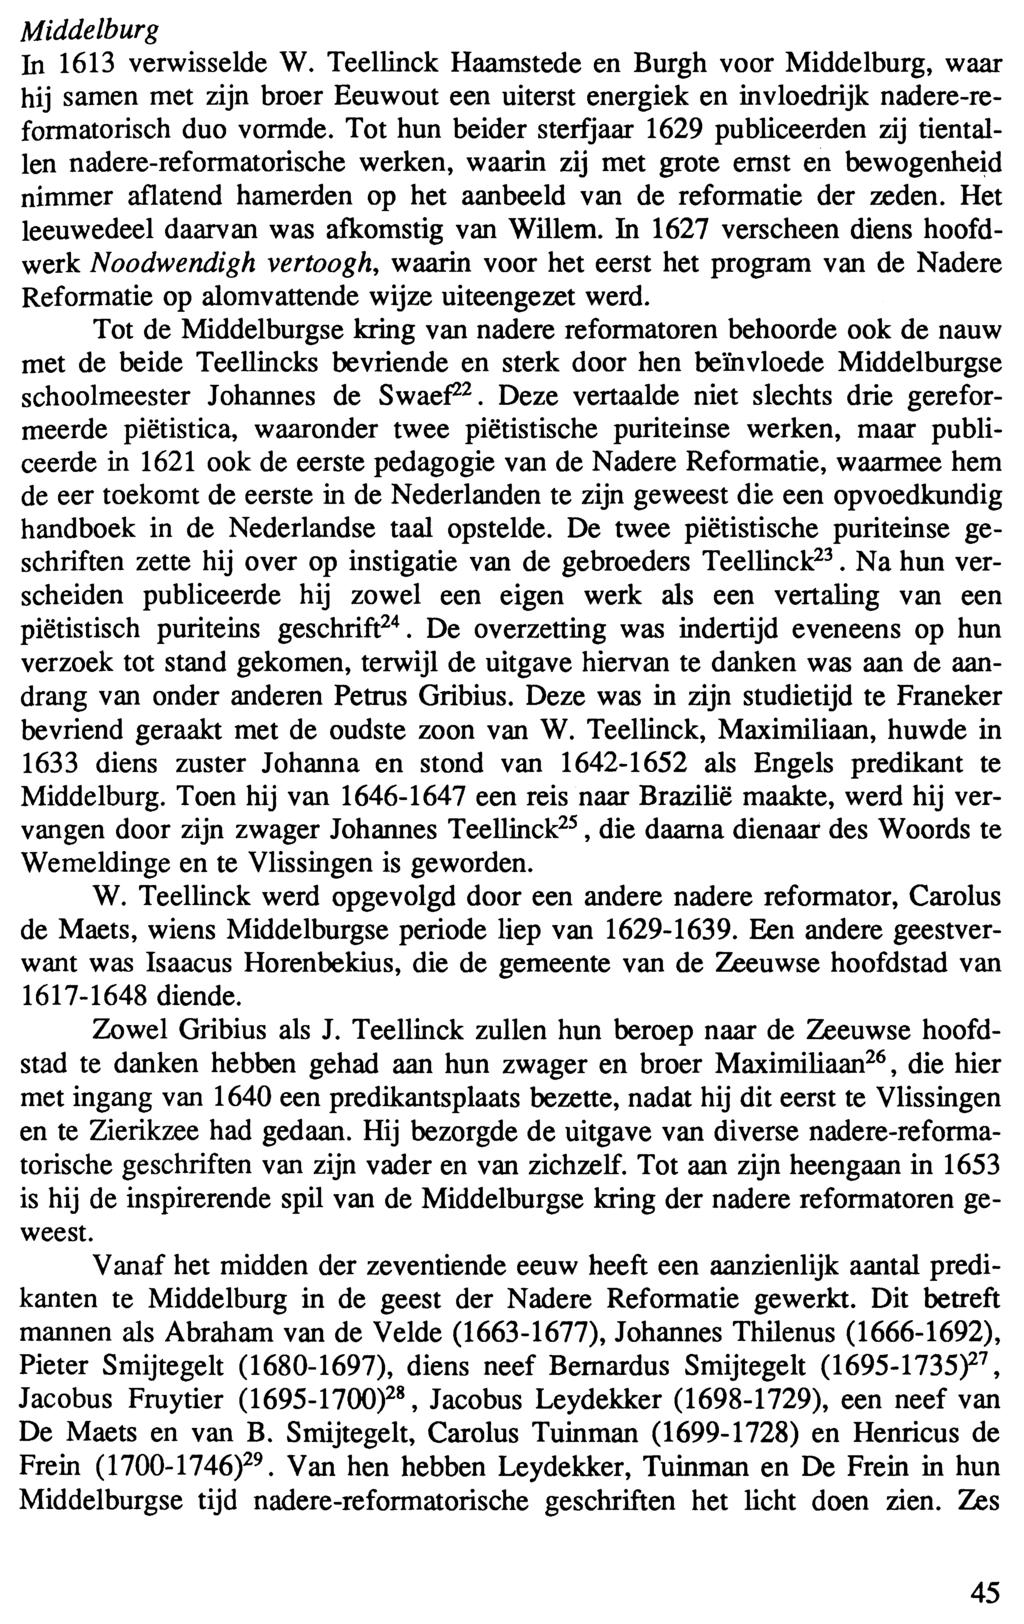 Middelburg In 1613 verwisselde W. Teellinck Haamstede en Burgh voor Middelburg, waar hij samen met zijn broer Eeuwout een uiterst energiek en invloedrijk nadere-reformatorisch duo vormde.